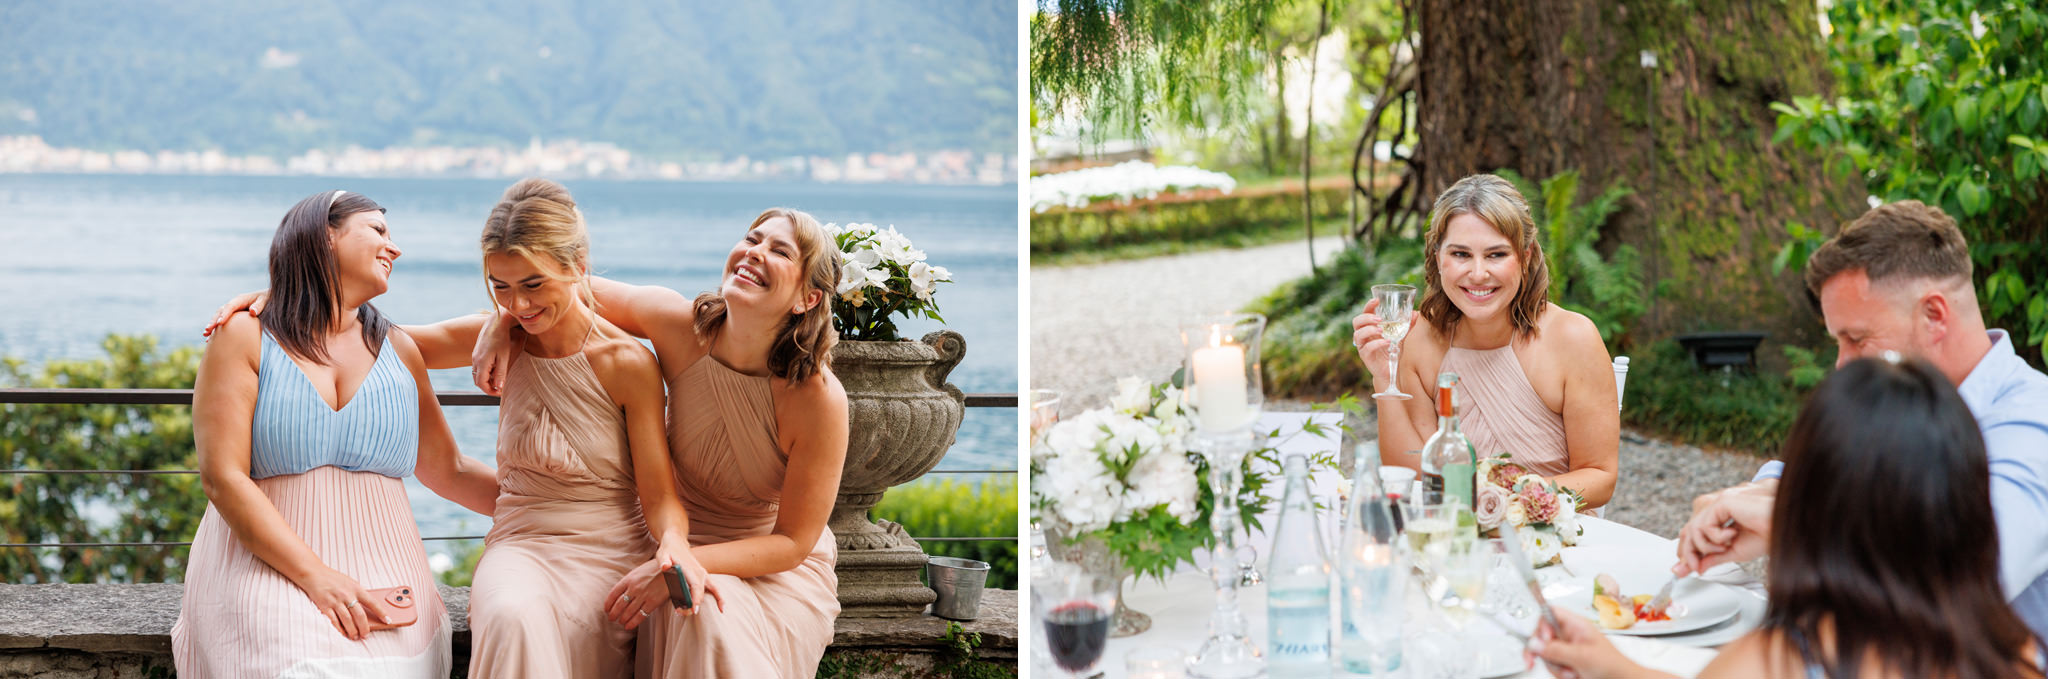 Gli invitati ad un matrimonio che si divertono sul lago di Como